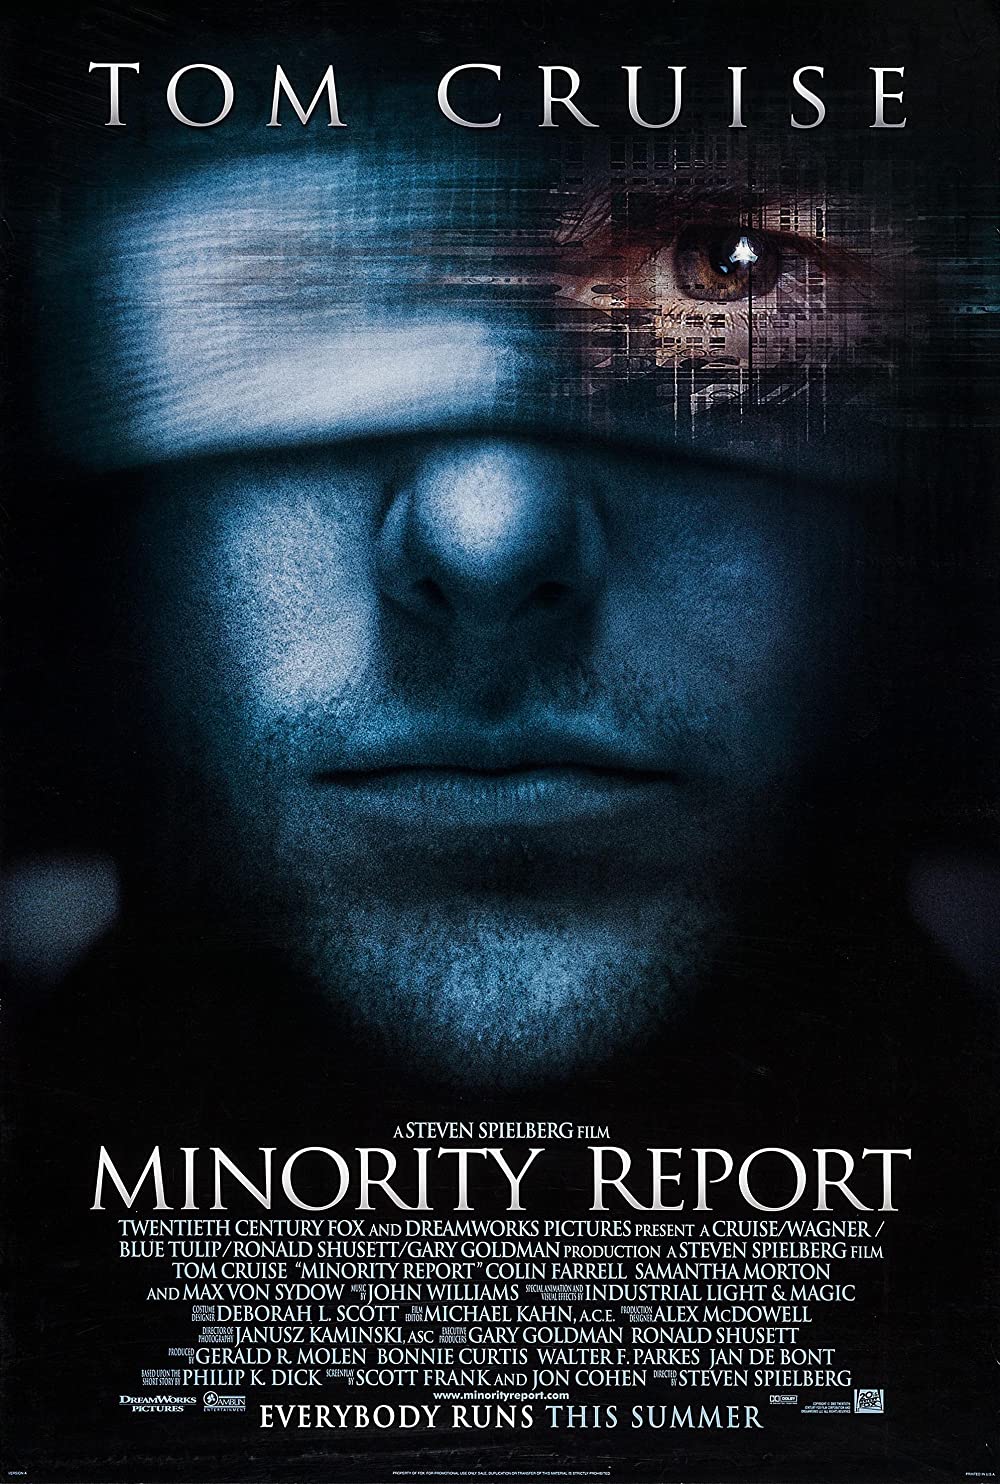 Filmbeschreibung zu Minority Report (OV)